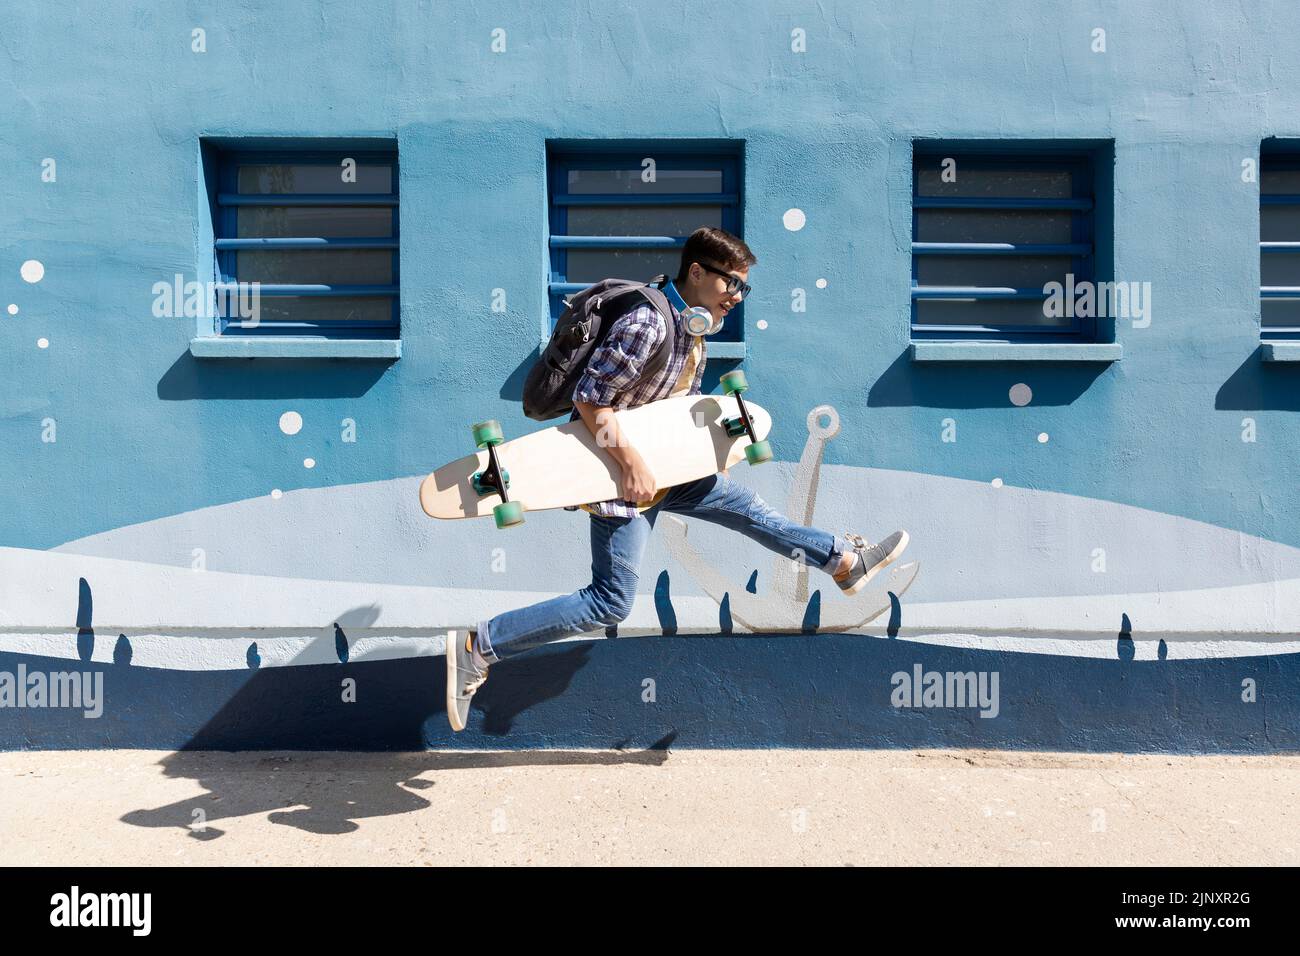 Un adolescent de race blanche sautant avec son skateboard à côté d'un mur bleu. Banque D'Images